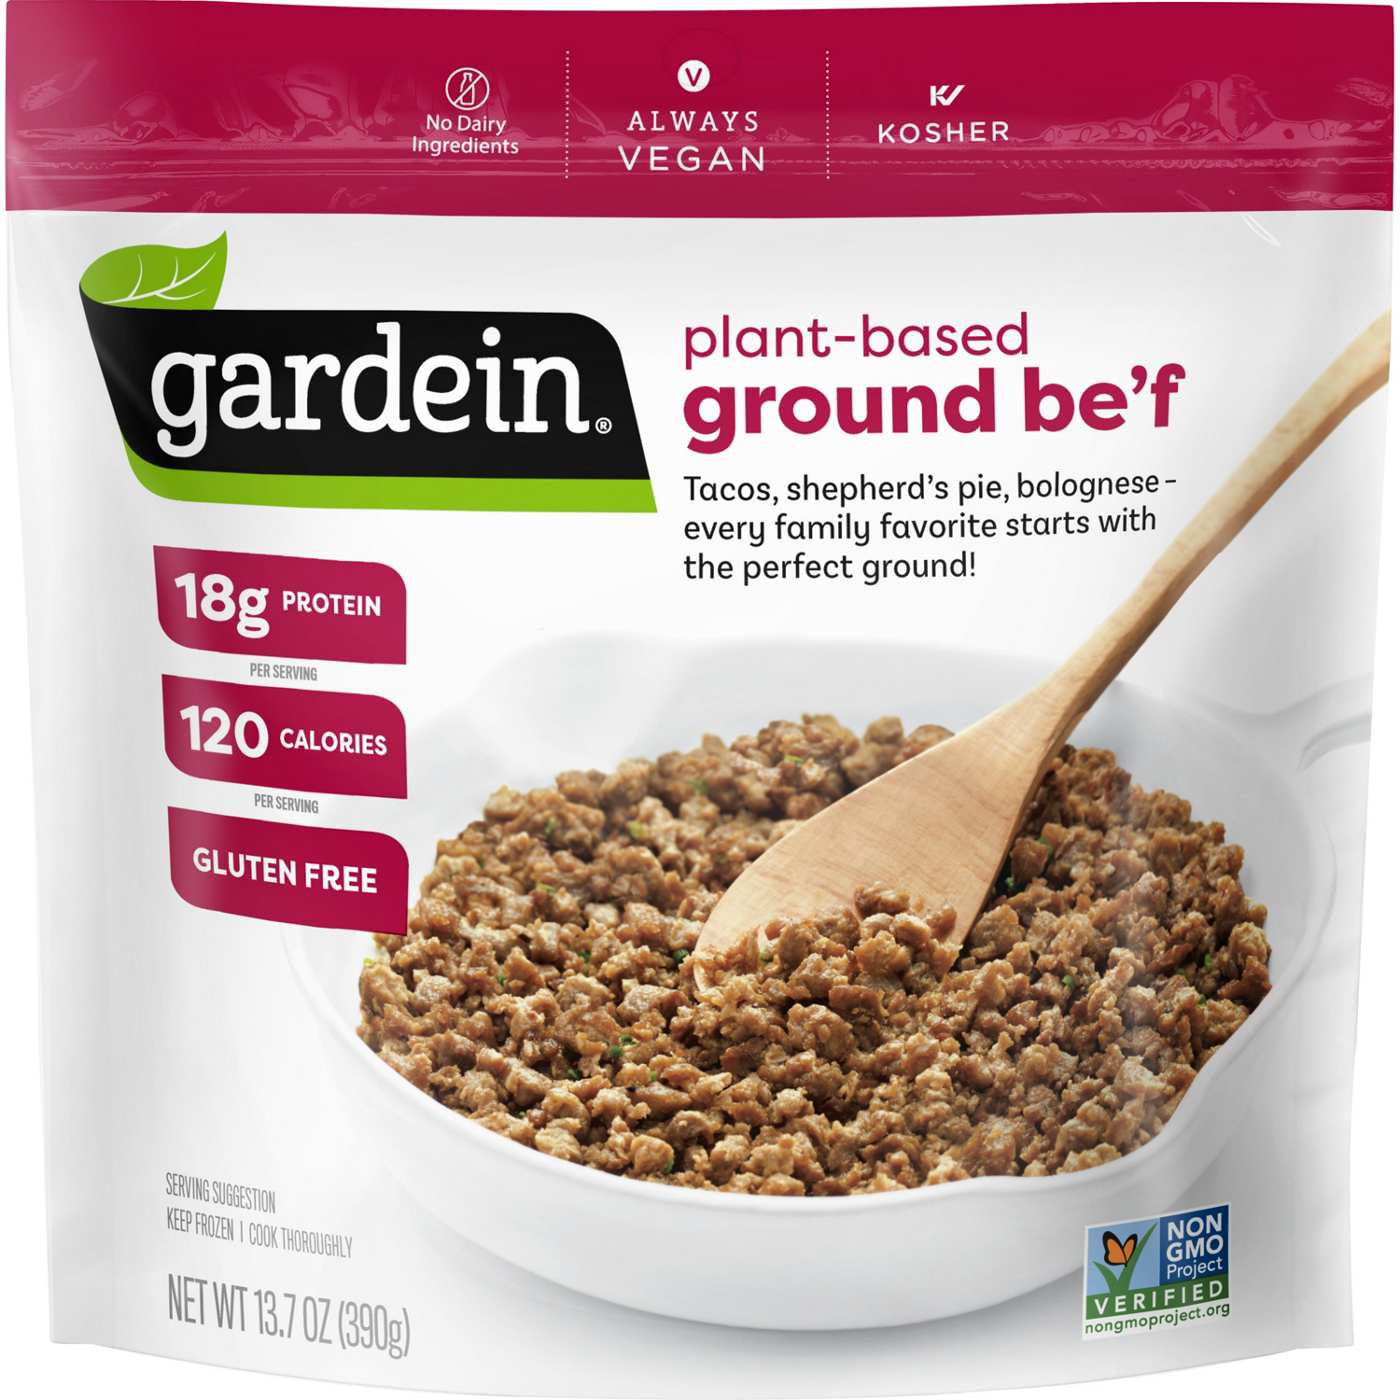 Gardein Vegan Frozen Gluten-Free Plant-Based Ground Be'f Crumbles; image 1 of 7